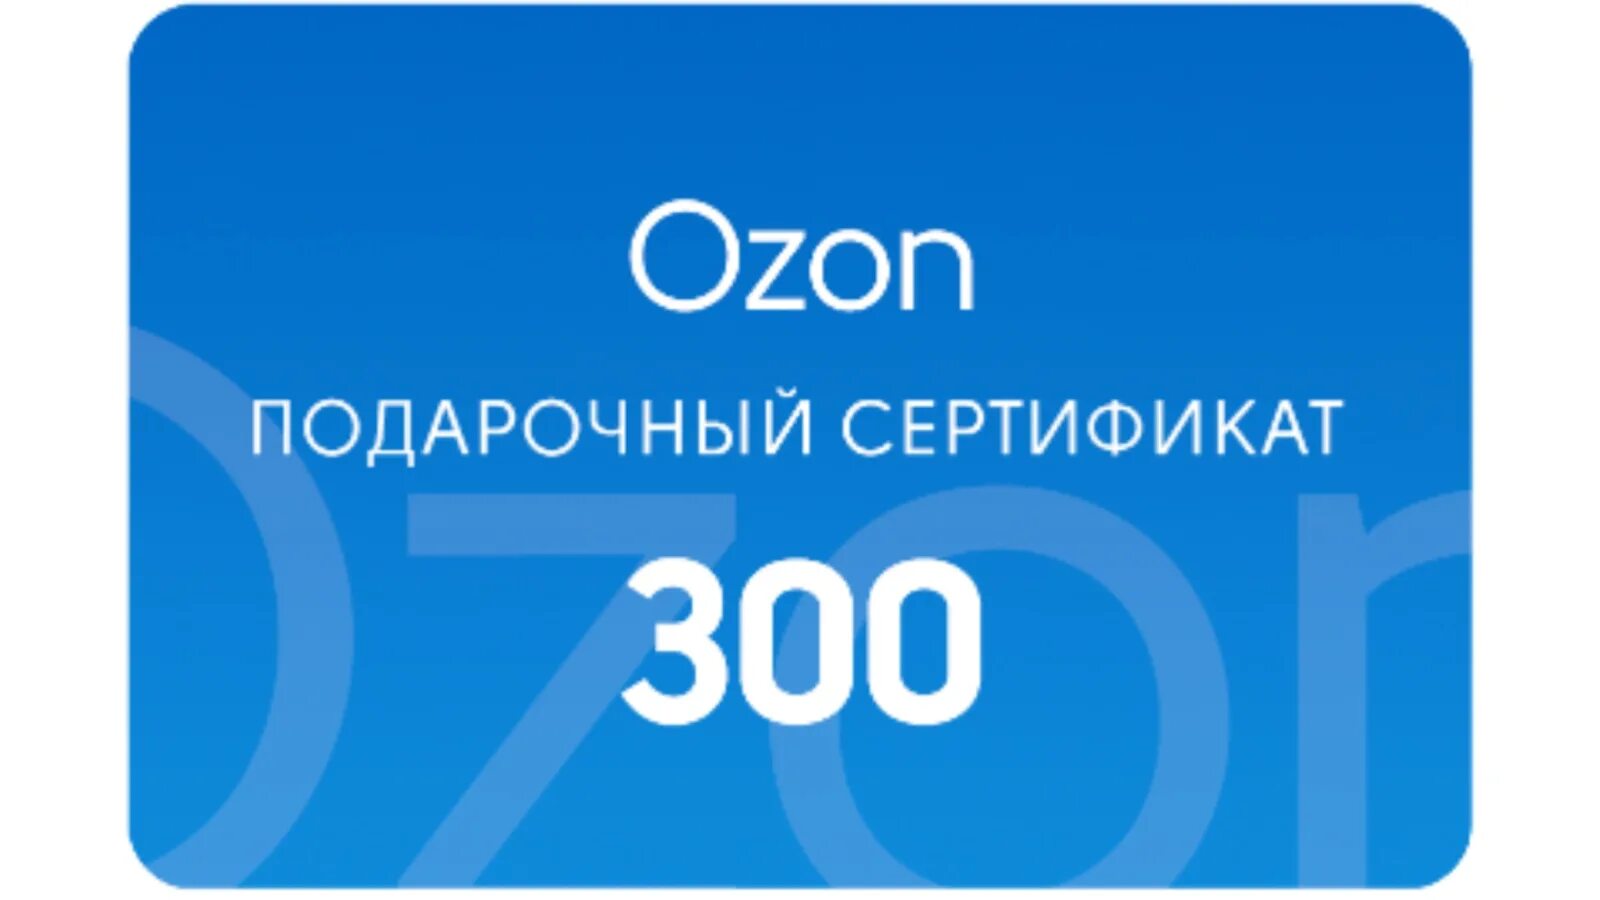 Подарочный сертификат Озон. Подарочная карта. Сертификат OZON. Подарочная карта OZON.